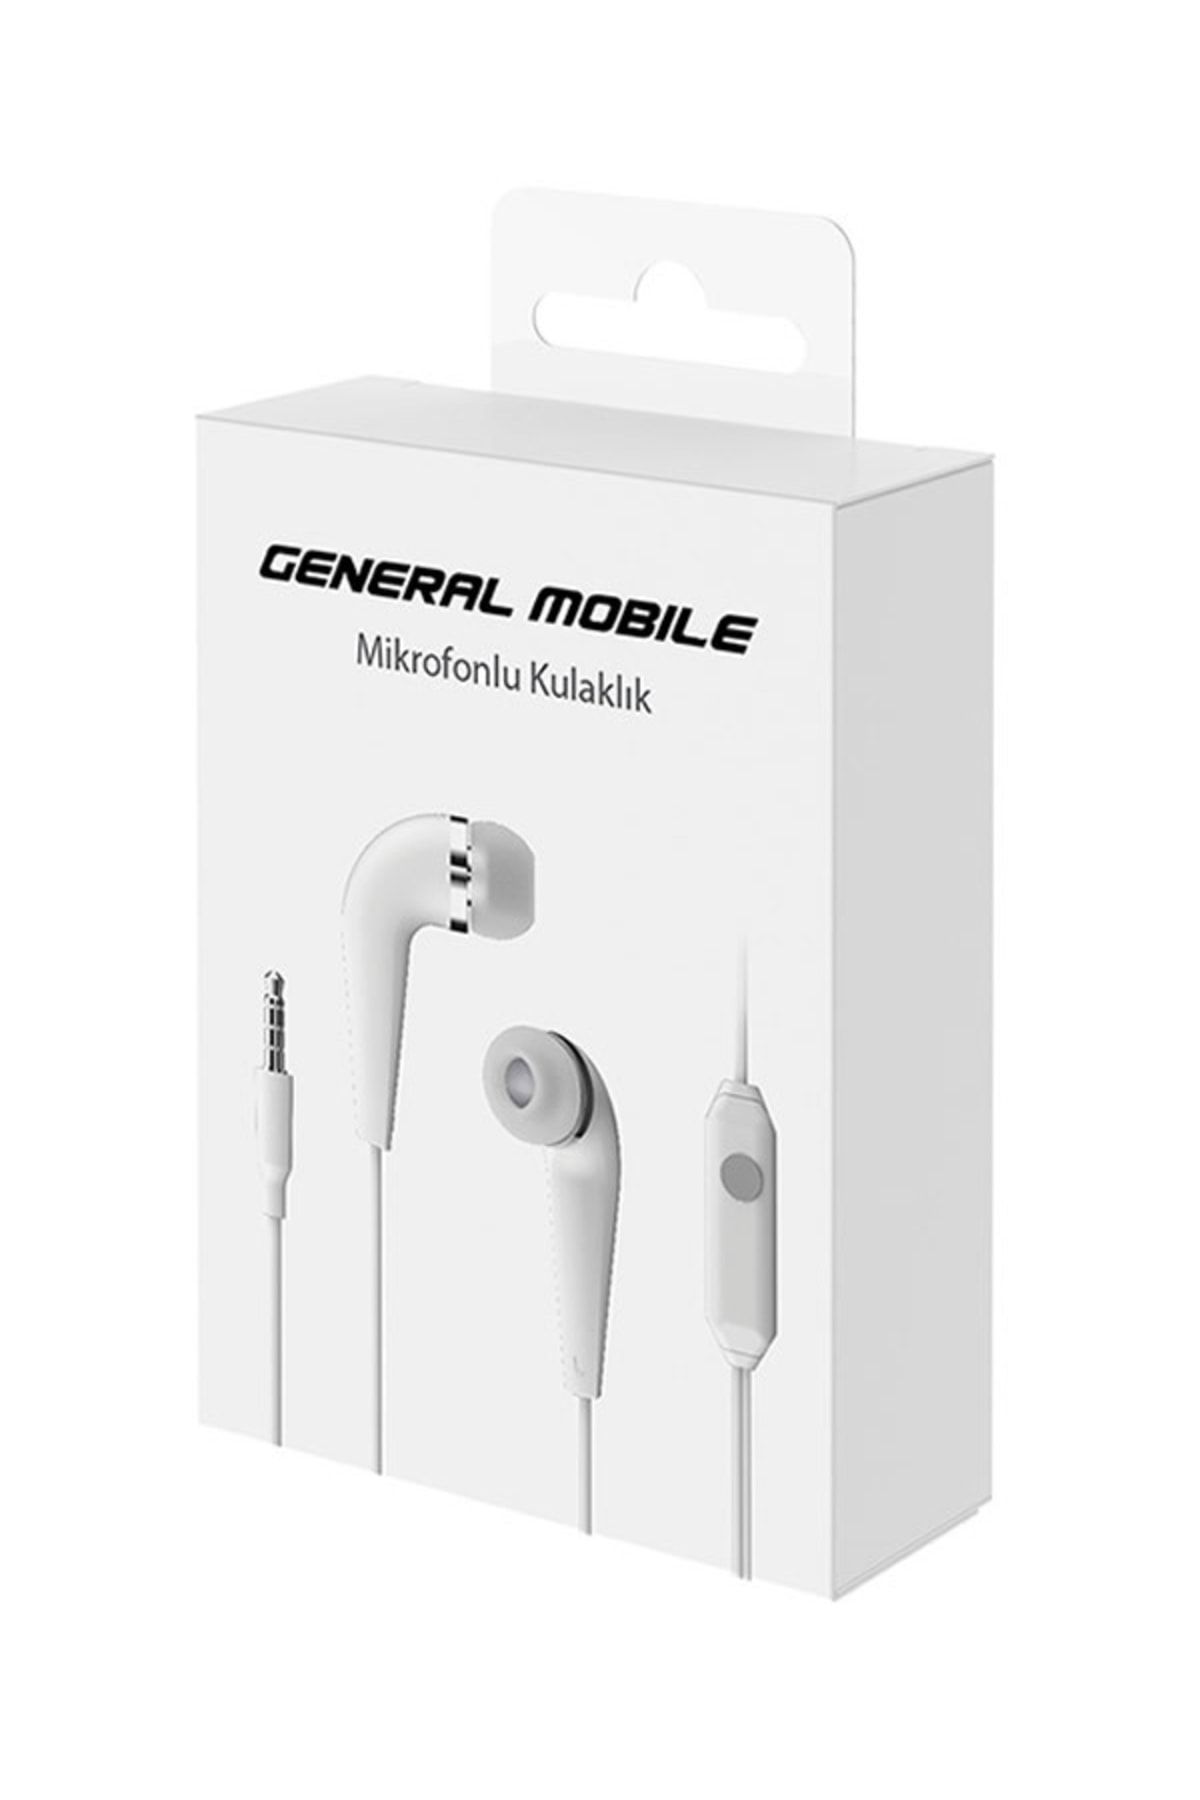 General Mobile Orijinal Kulak Içi Mikrofonlu Kulaklık ( Garantili )